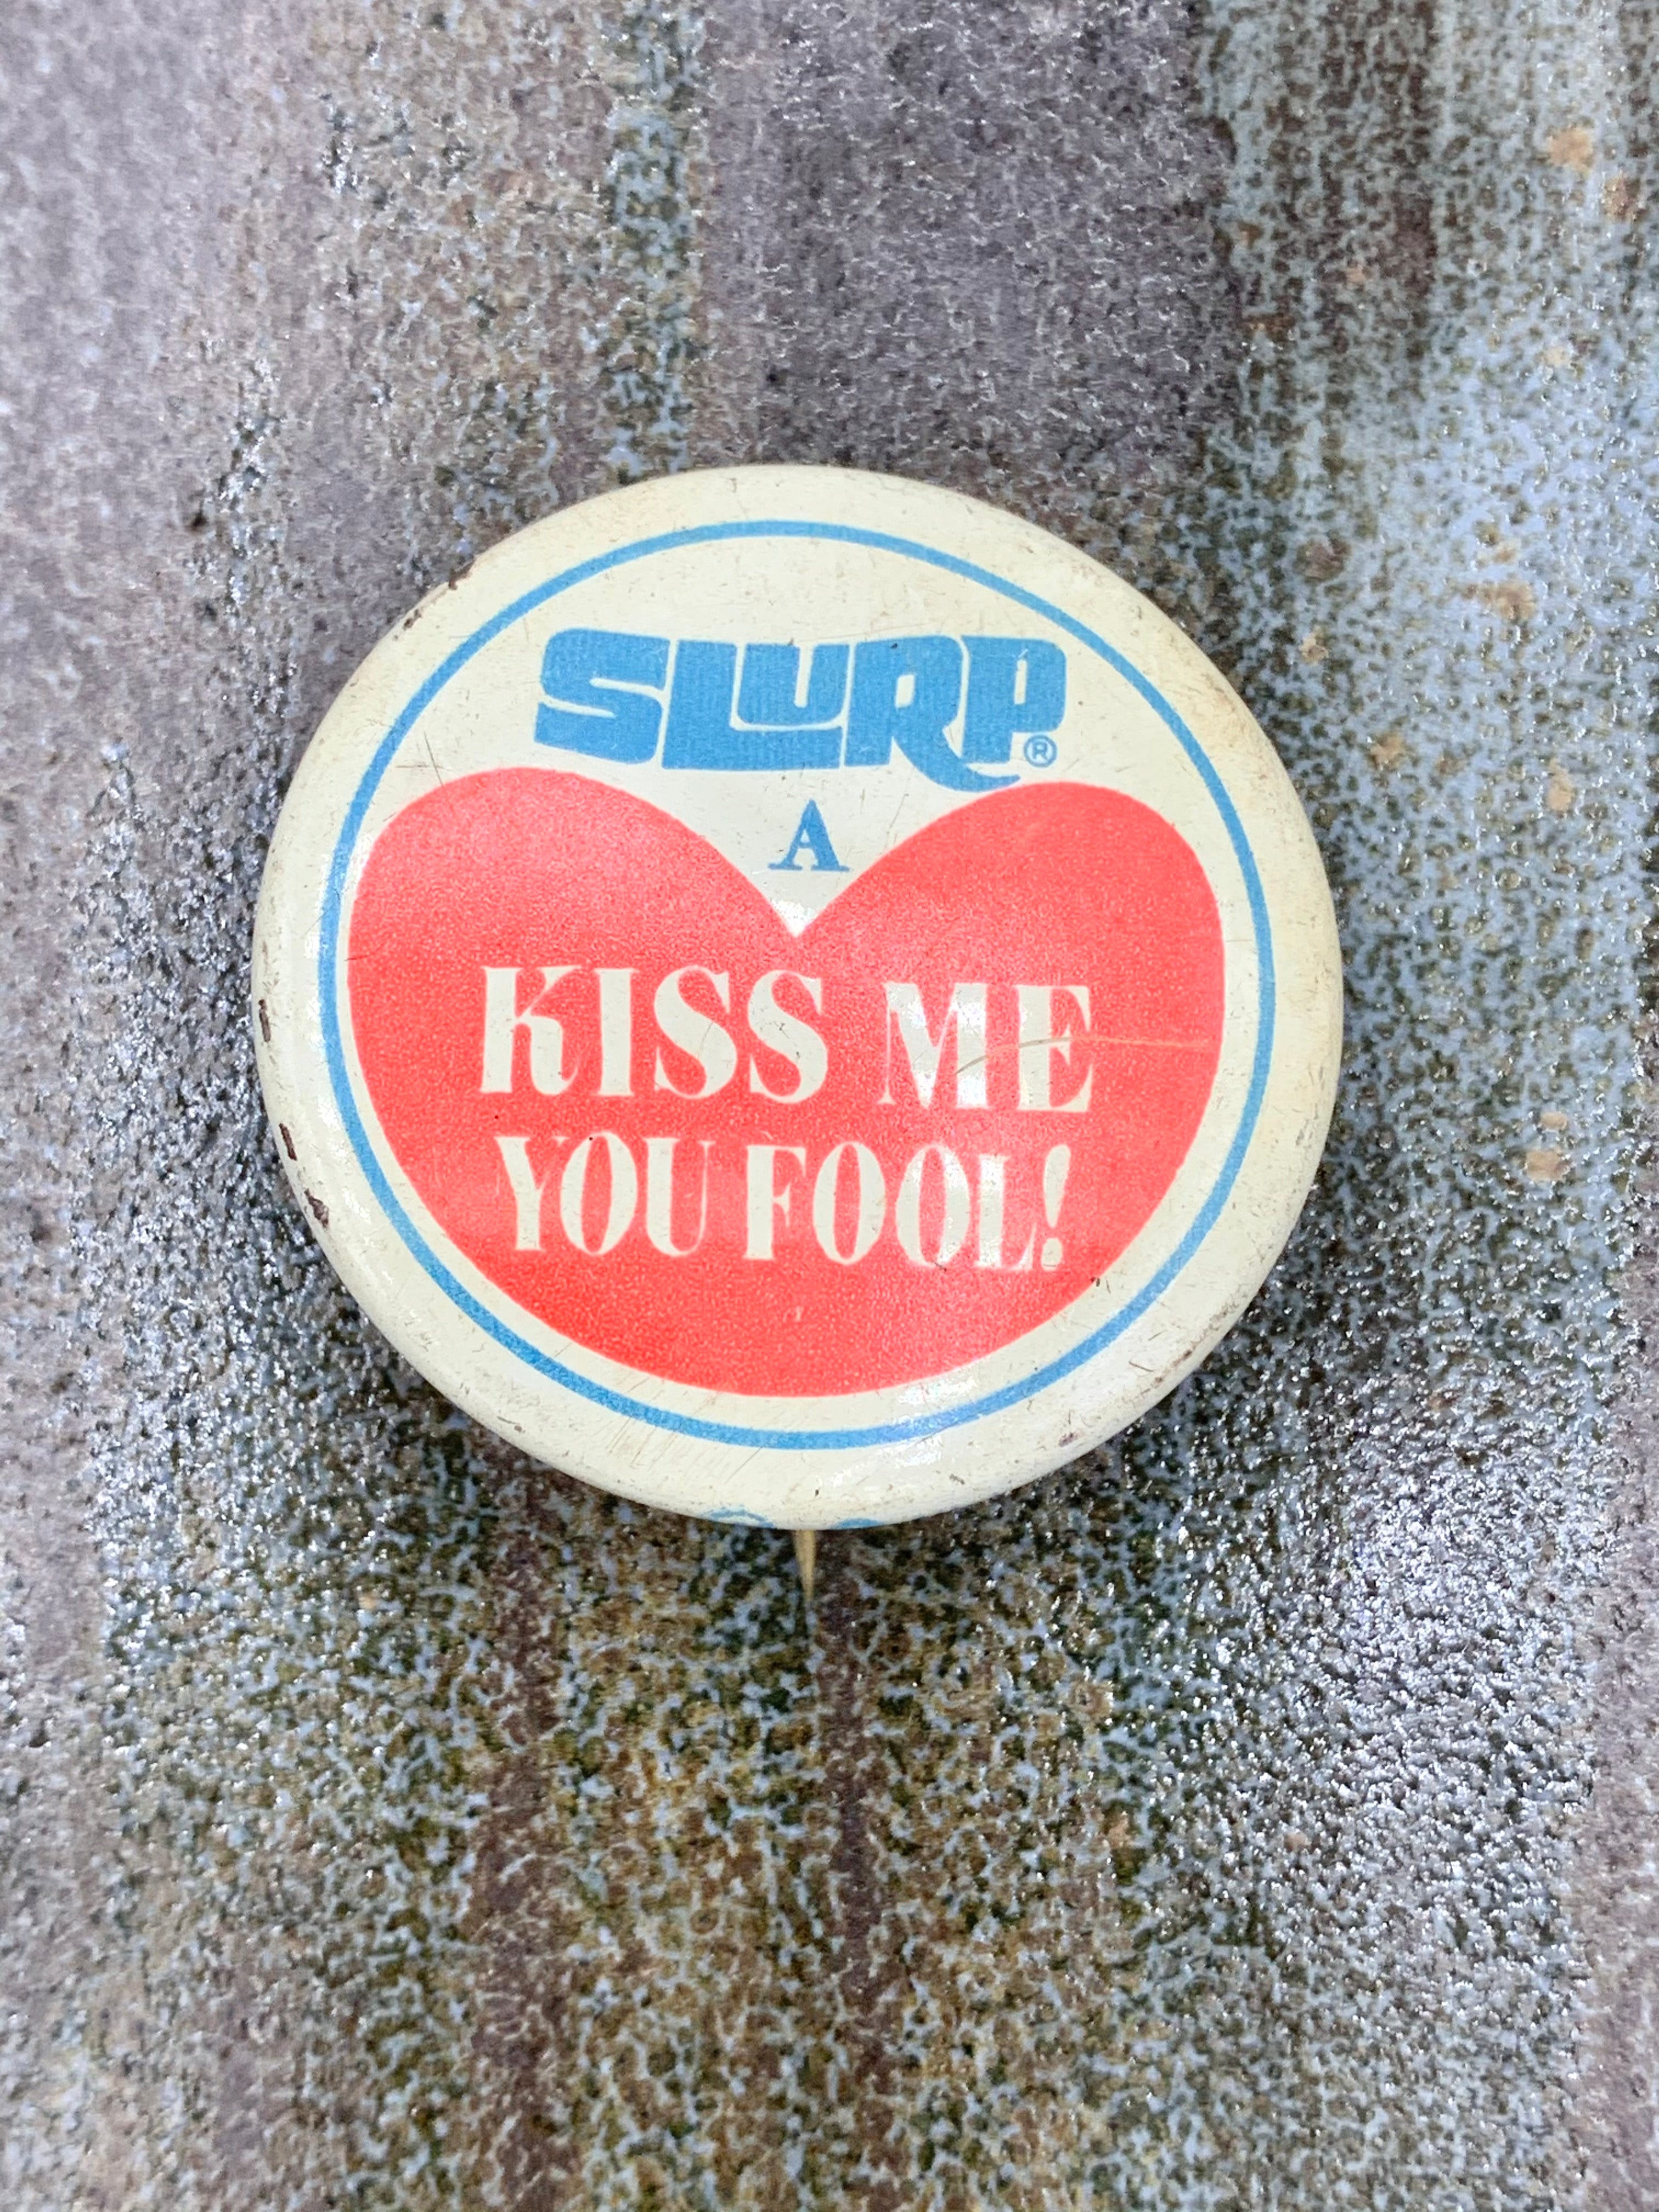 "Slurp A Kiss Me You Fool" Retro Vintage Pinback Button; Slurpee 7 Eleven Ephemera